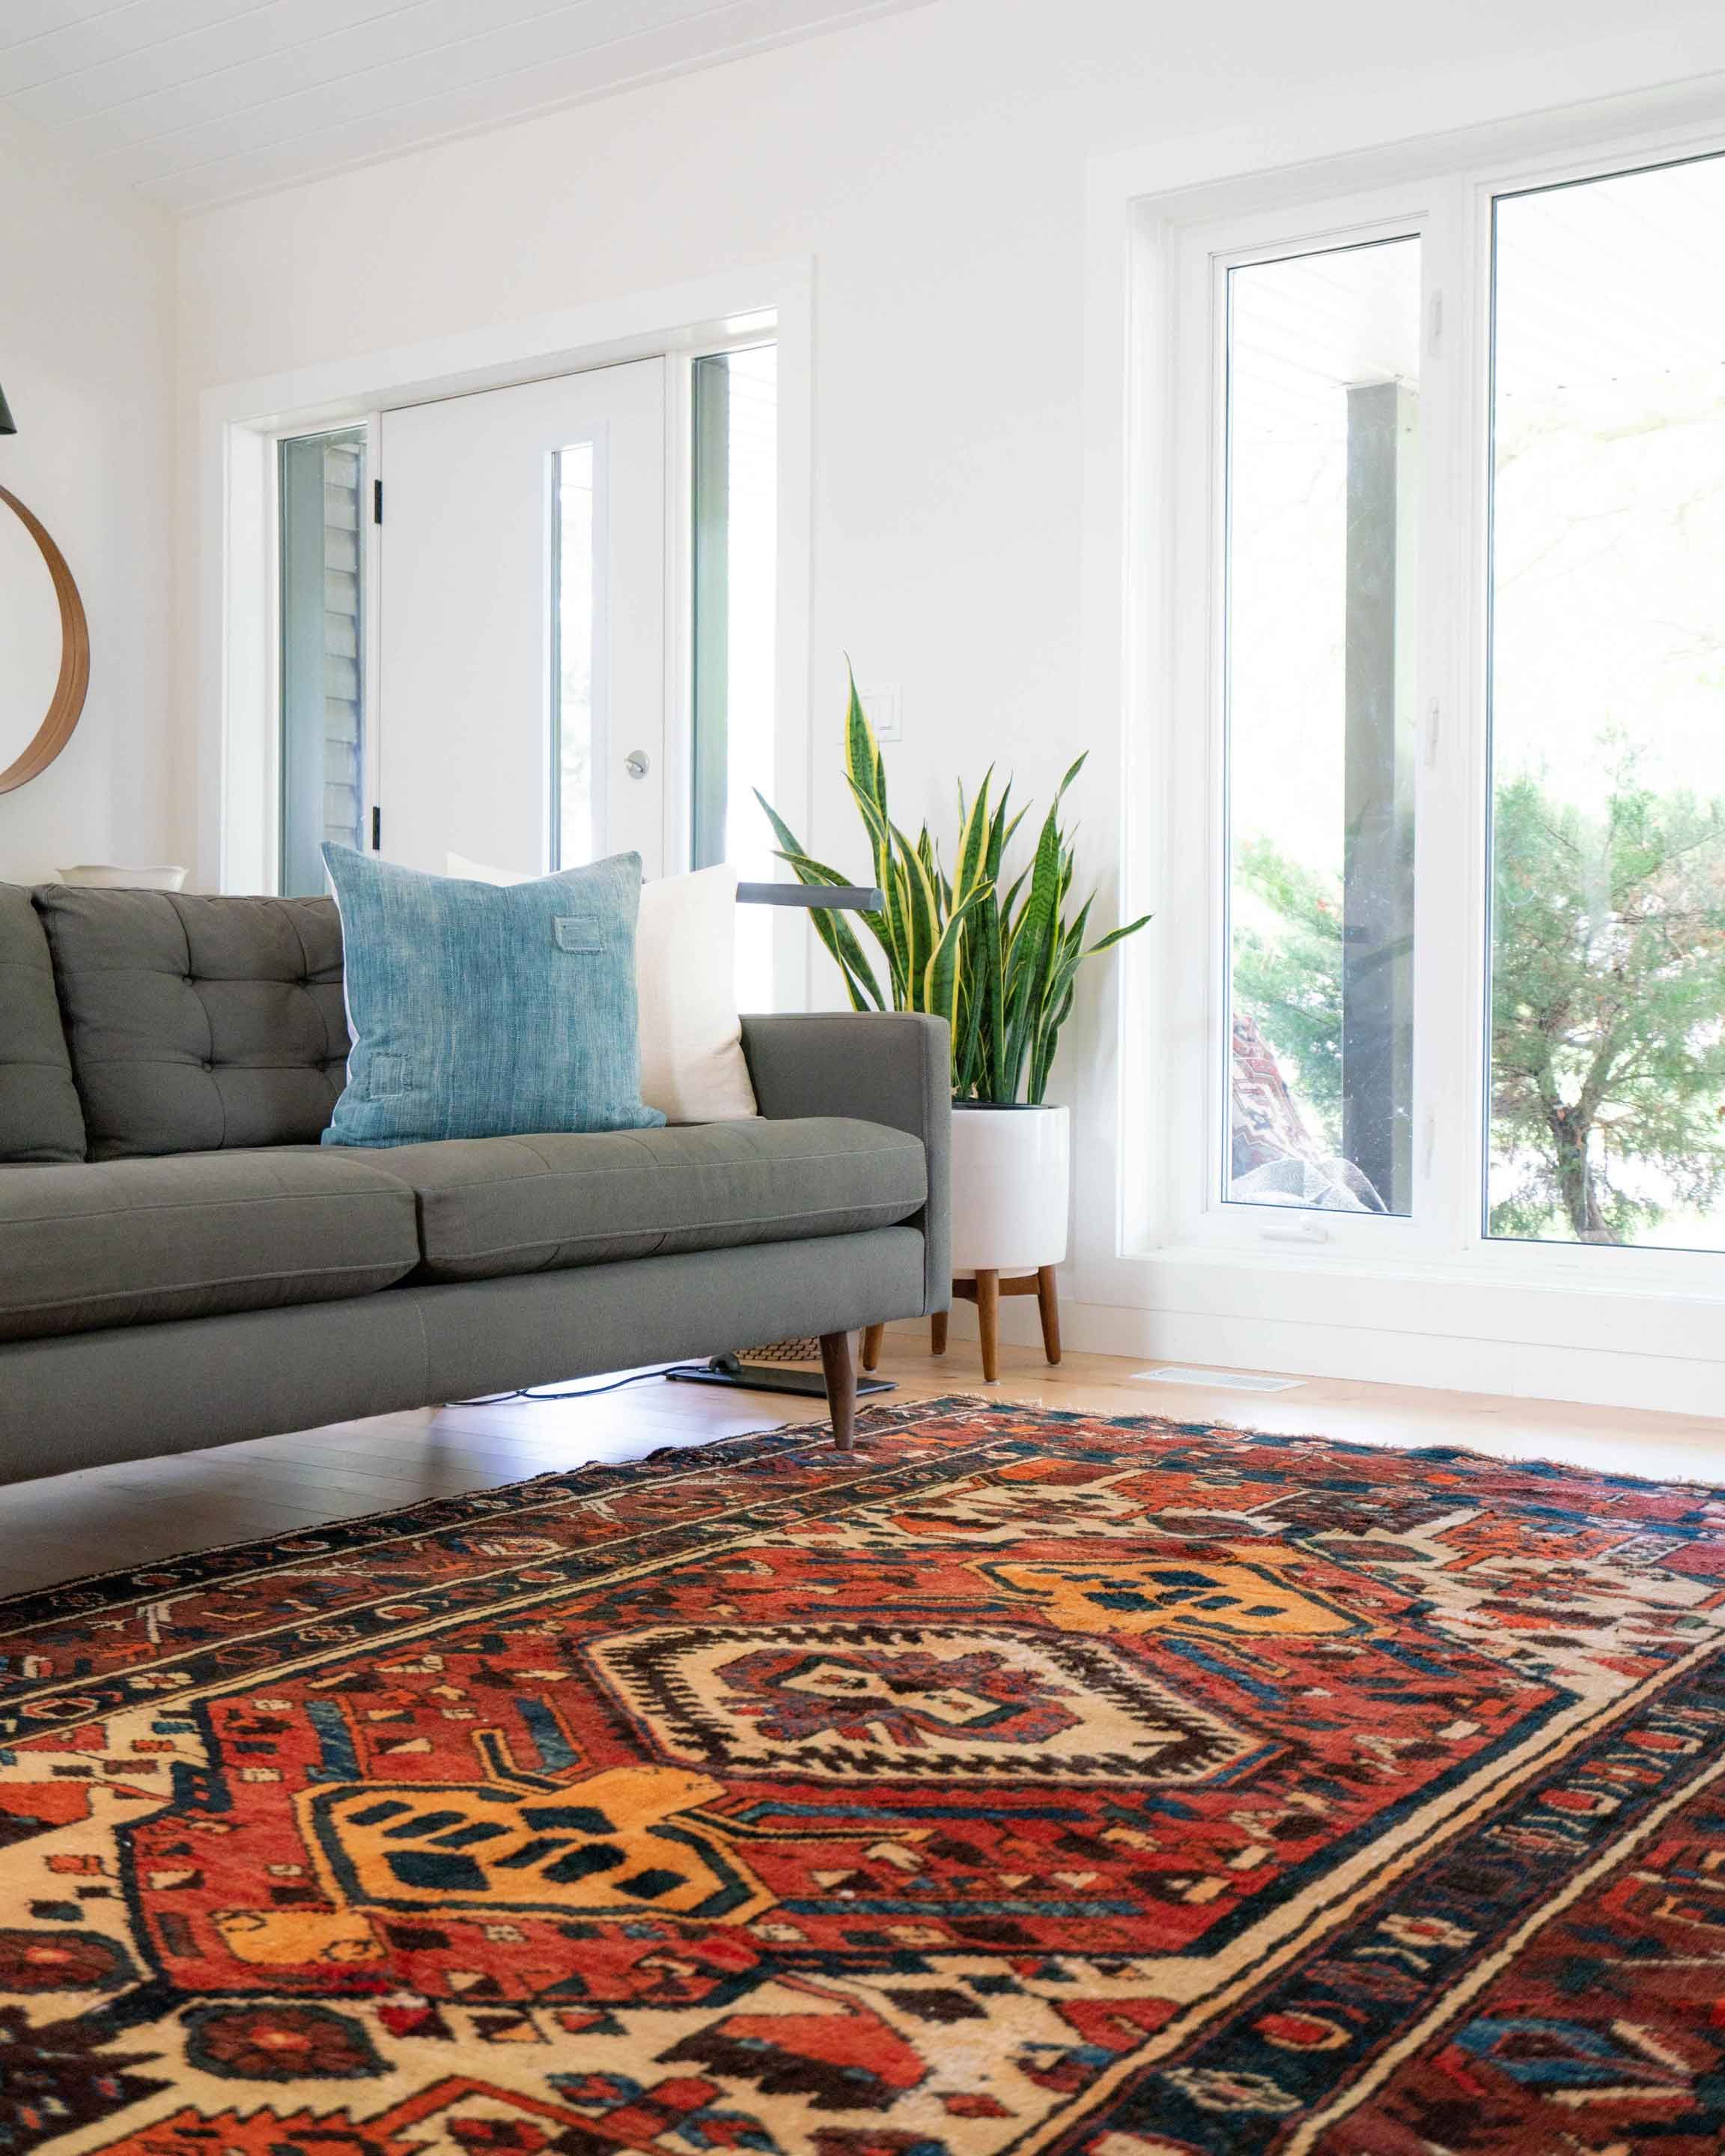 Um einen Teppich möglichst staub- und schmutzfrei zu bekommen, könnt ihr ihn ab und zu mit dem guten alten Teppichklopfer behandeln.